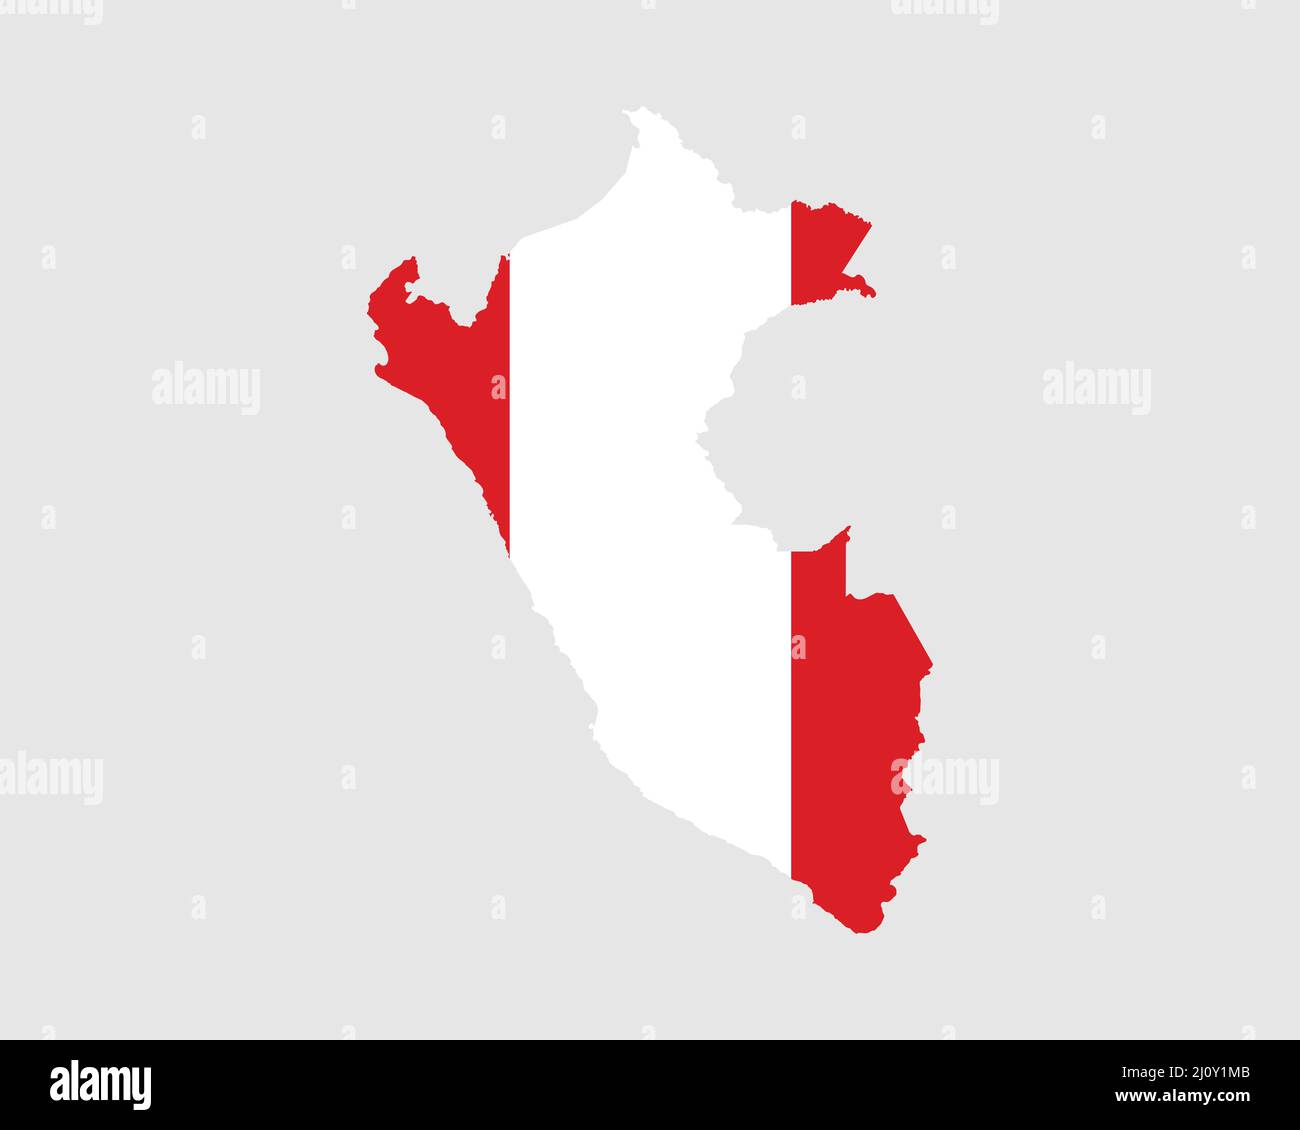 Mappa bandiera del Perù. Mappa della Repubblica del Perù con la bandiera del paese peruviano. Illustrazione vettoriale. Illustrazione Vettoriale